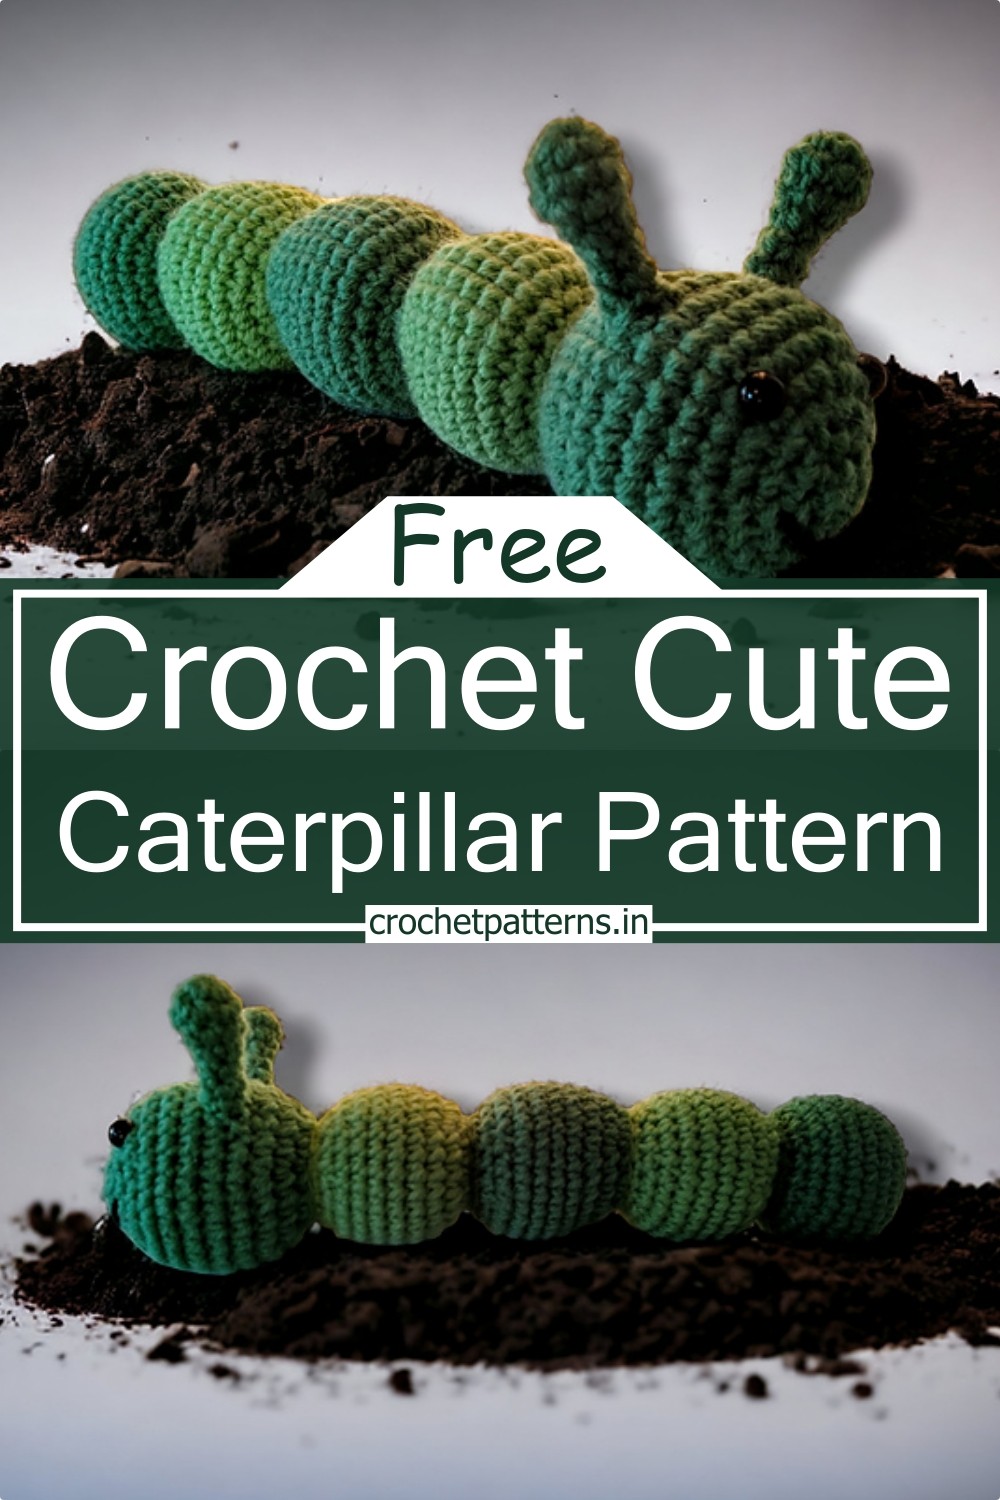 Crochet Cute Caterpillar Pattern